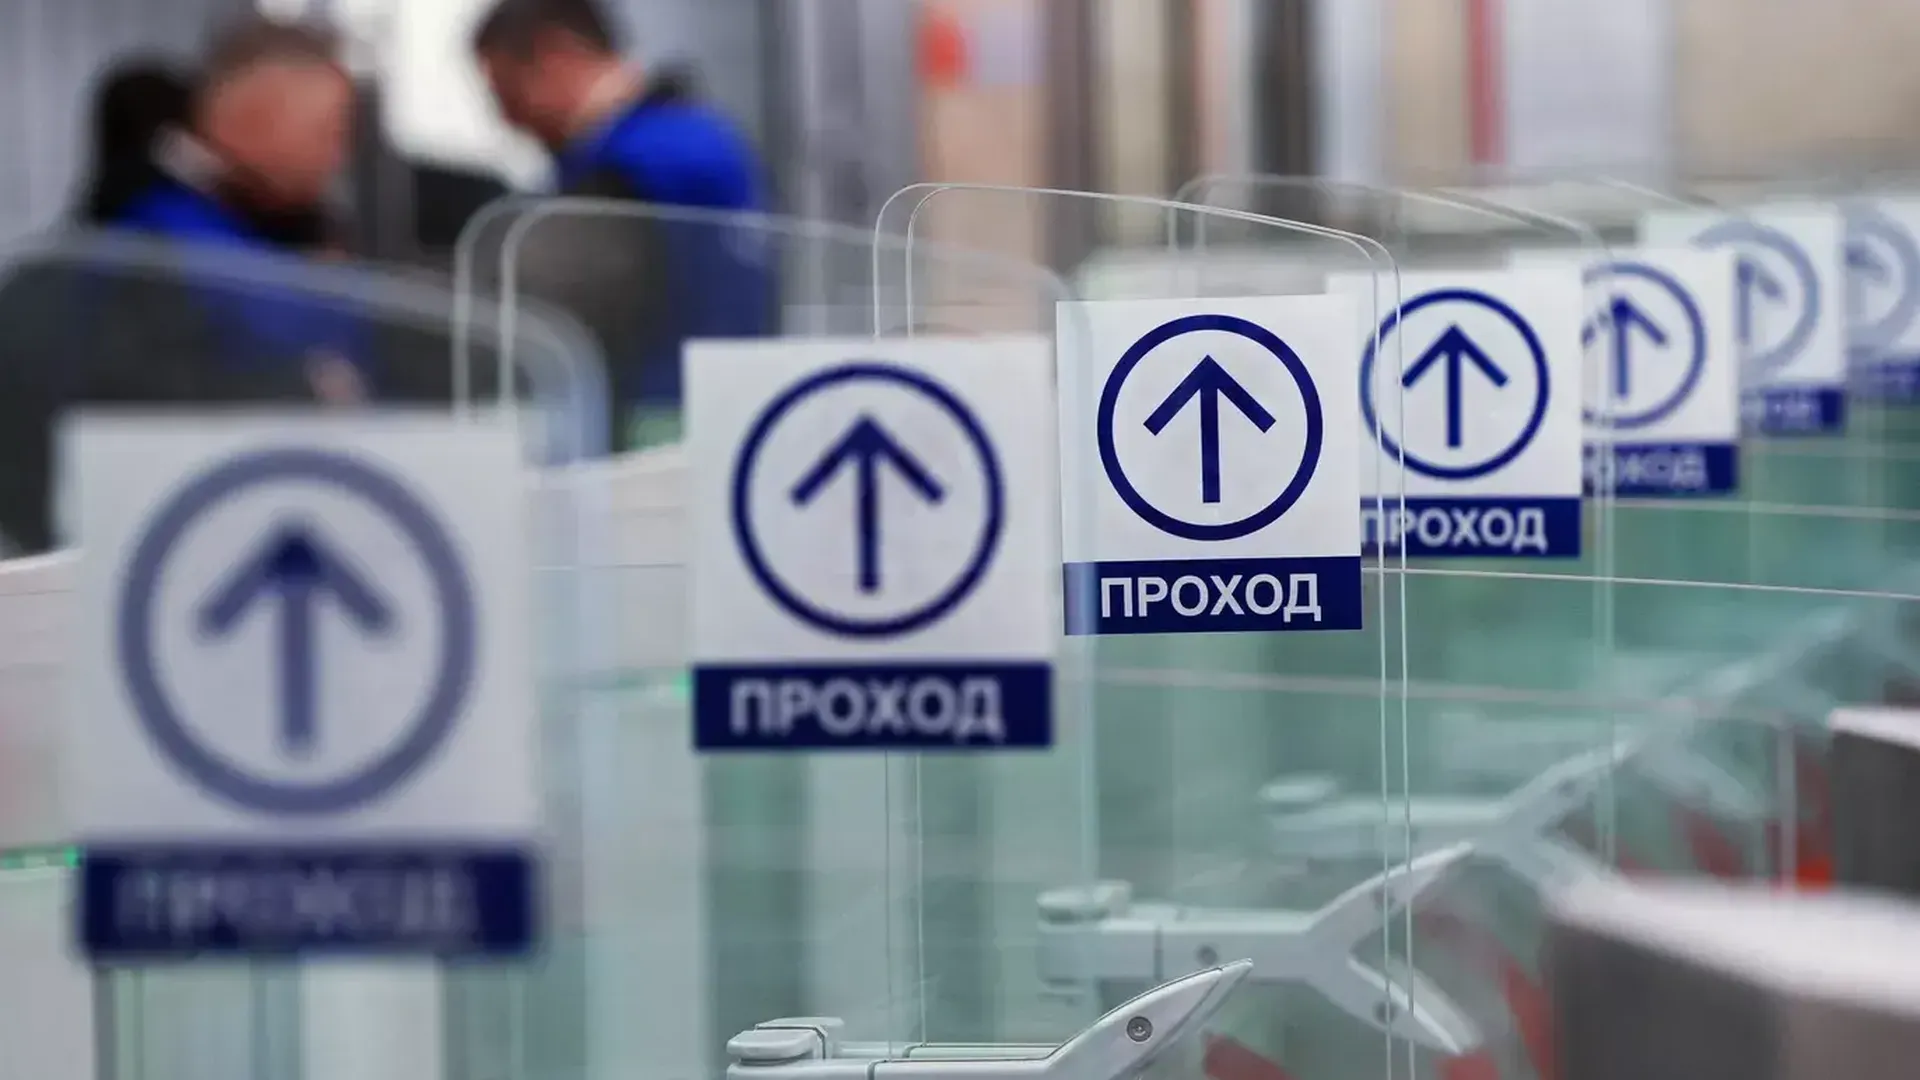 Школьники и студенты Москвы сэкономили 31 миллион рублей на проездных на МЦД